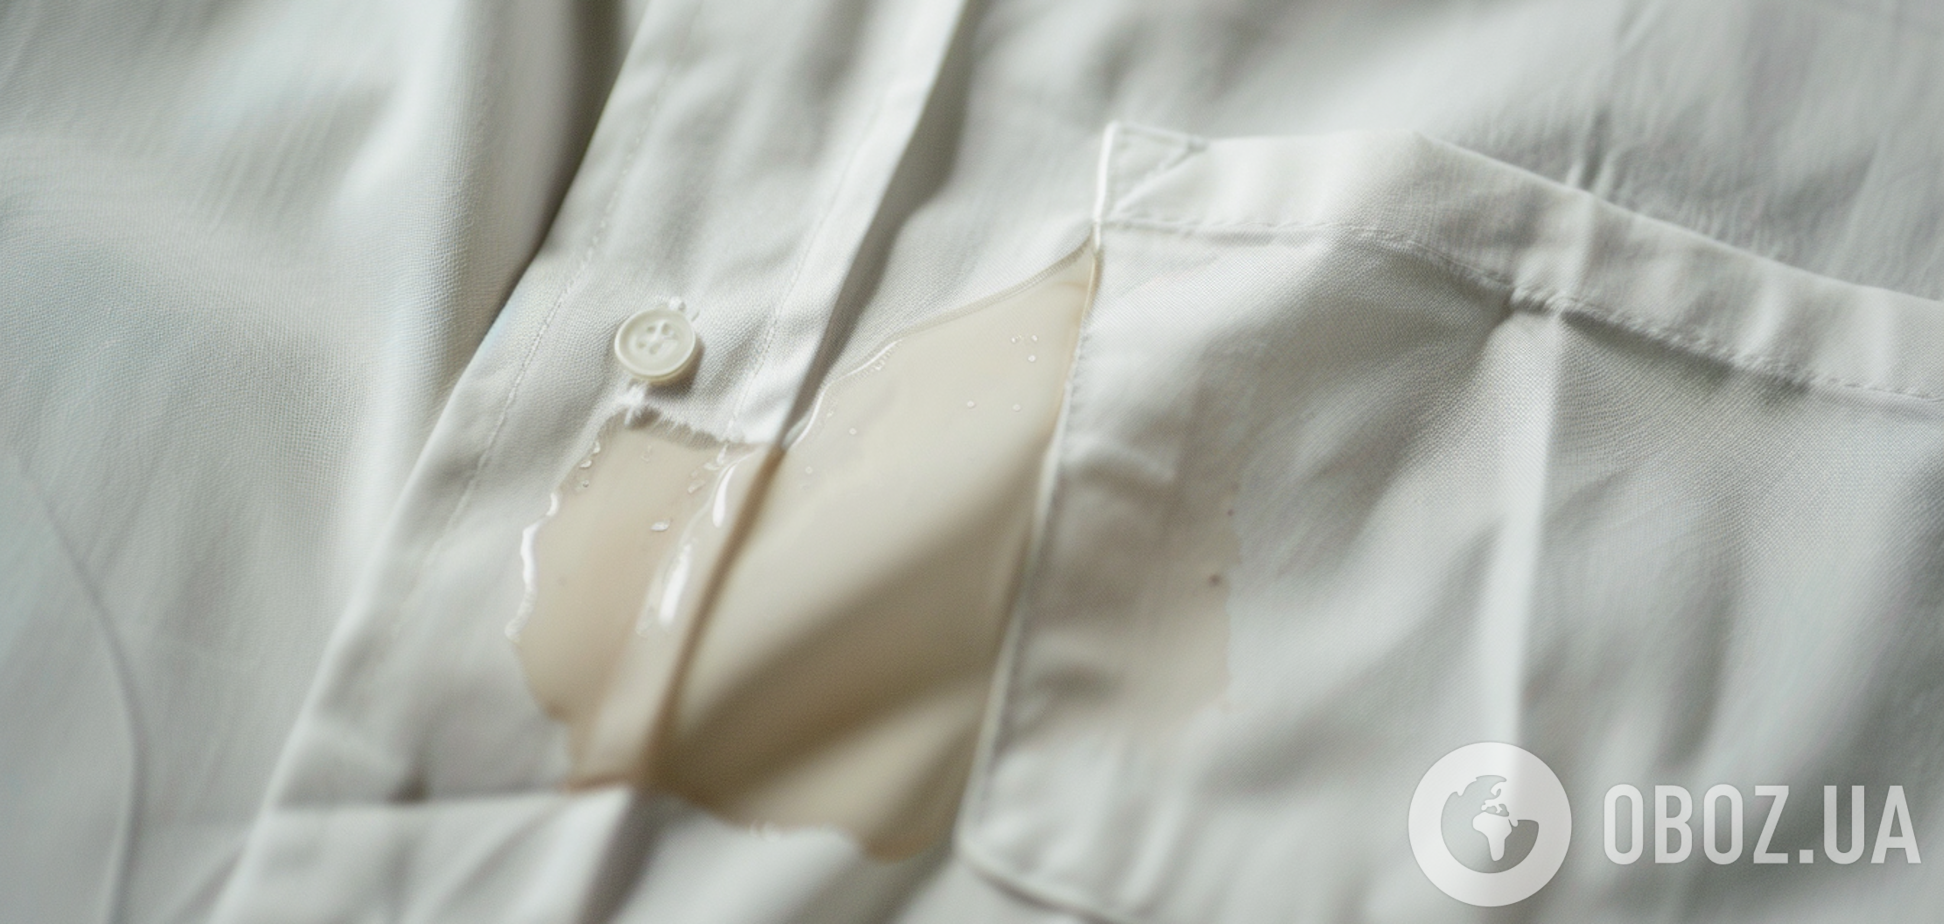 Як видалити з одягу плями від суперклею: спосіб, що діє навіть у безнадійних випадках